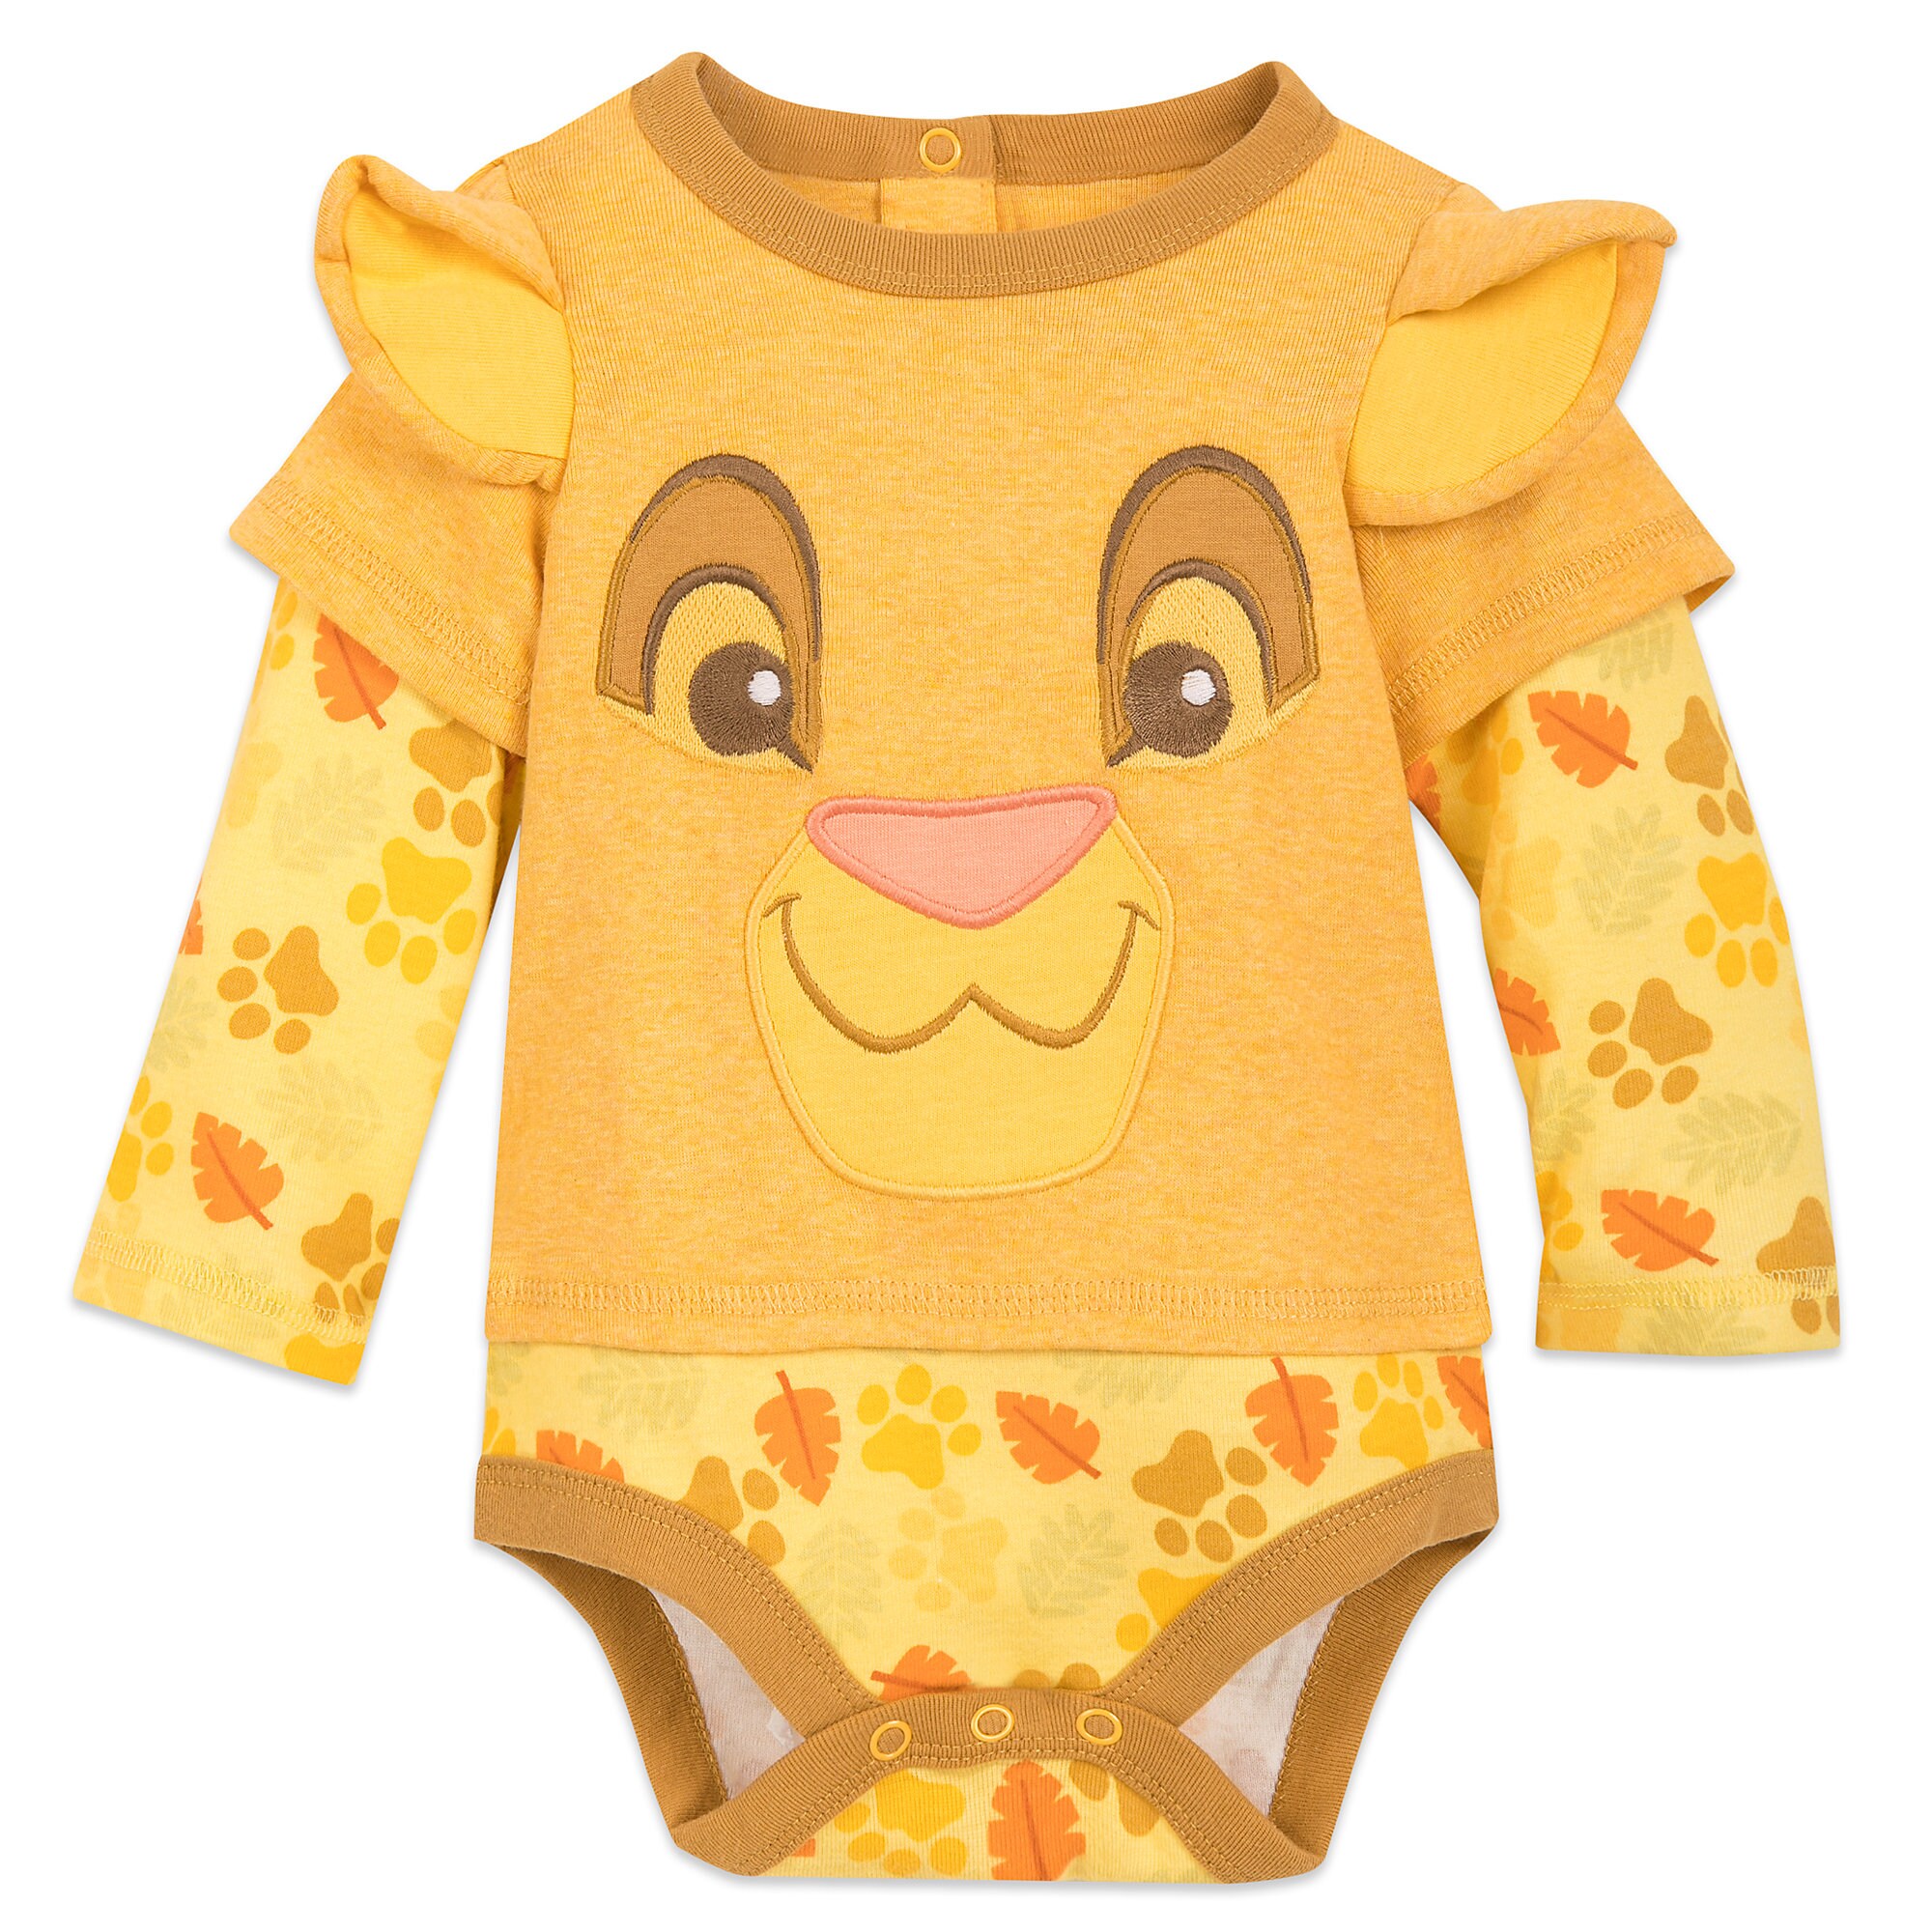 Simba Long Sleeve Bodysuit for Baby